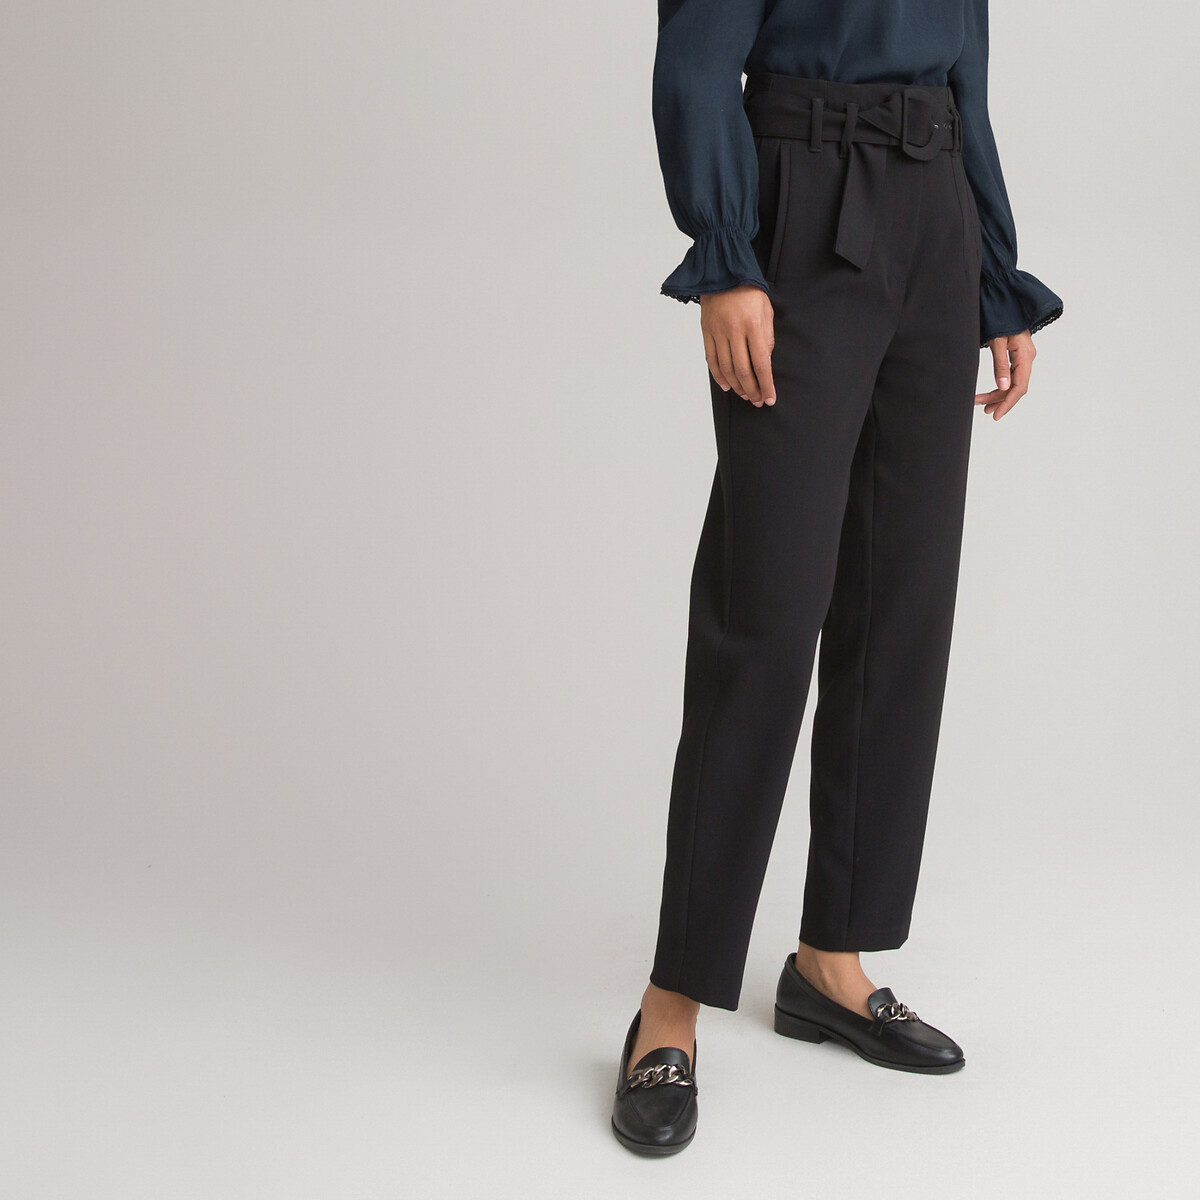 ontvangen is meer dan convergentie Strakke broek, hoge taille zwart La Redoute Collections | La Redoute